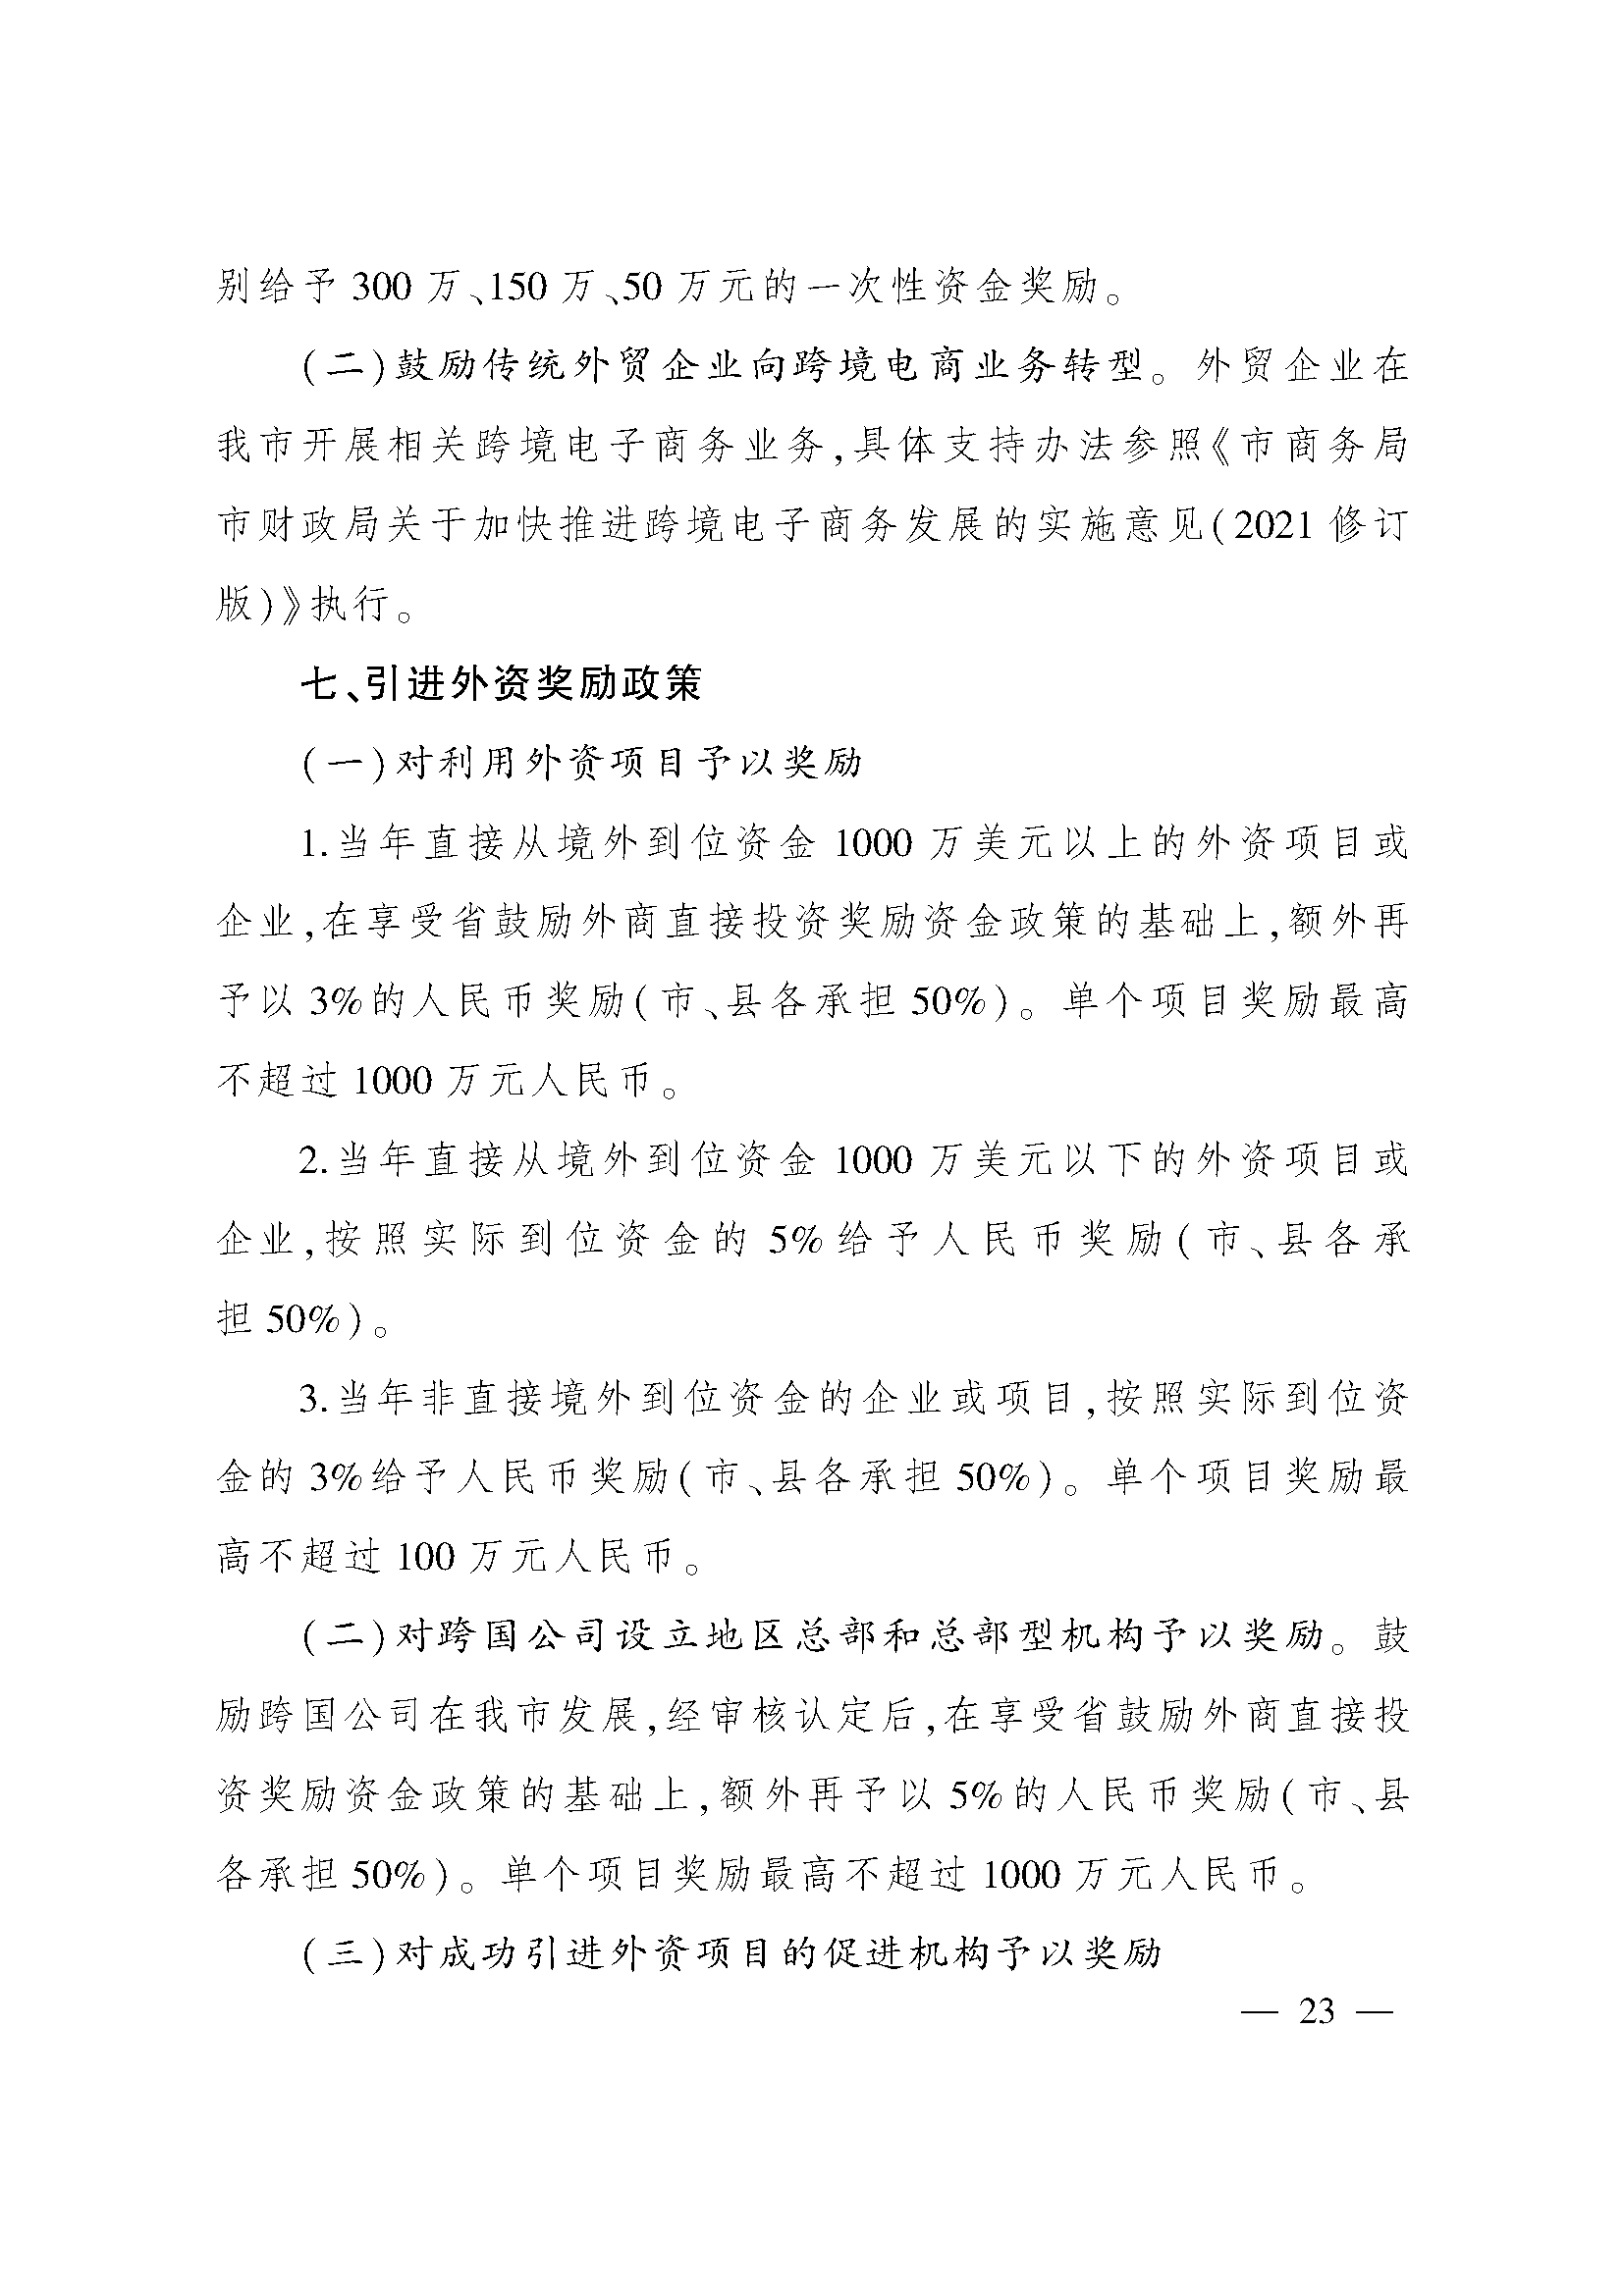 太原市人民政府办公室关于印发太原市招商引资若干措施的通知(图23)